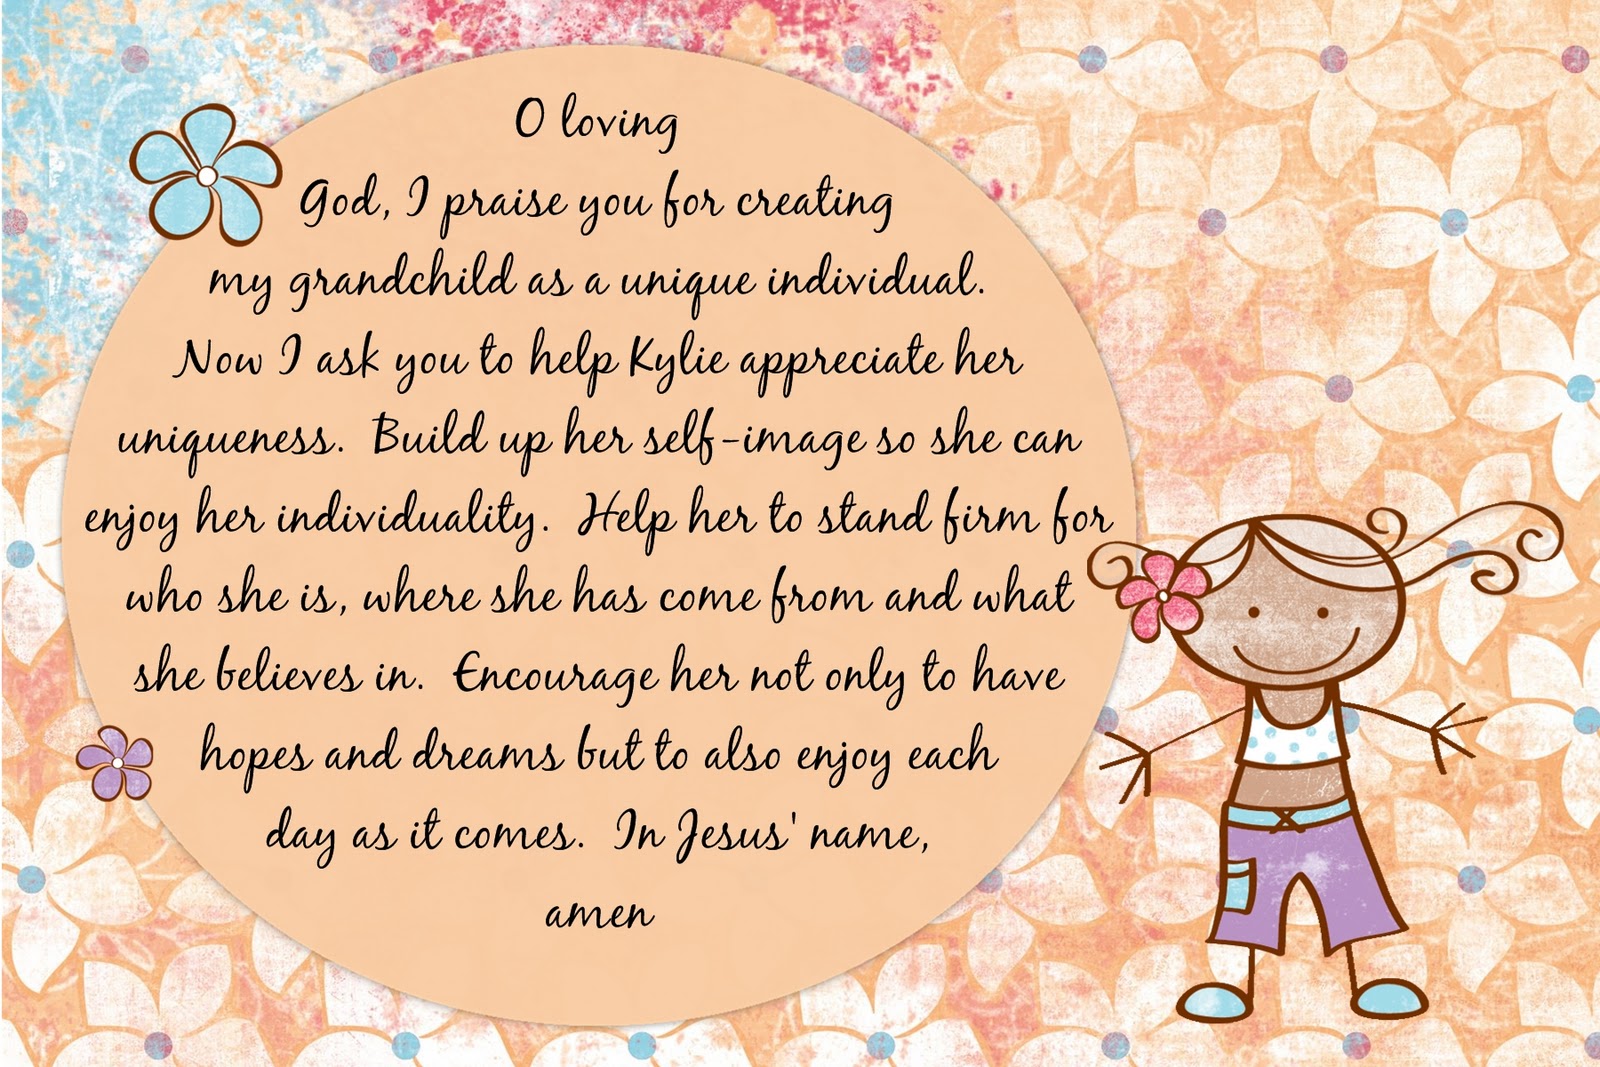 Power of the Flower Granddaughter Prayer